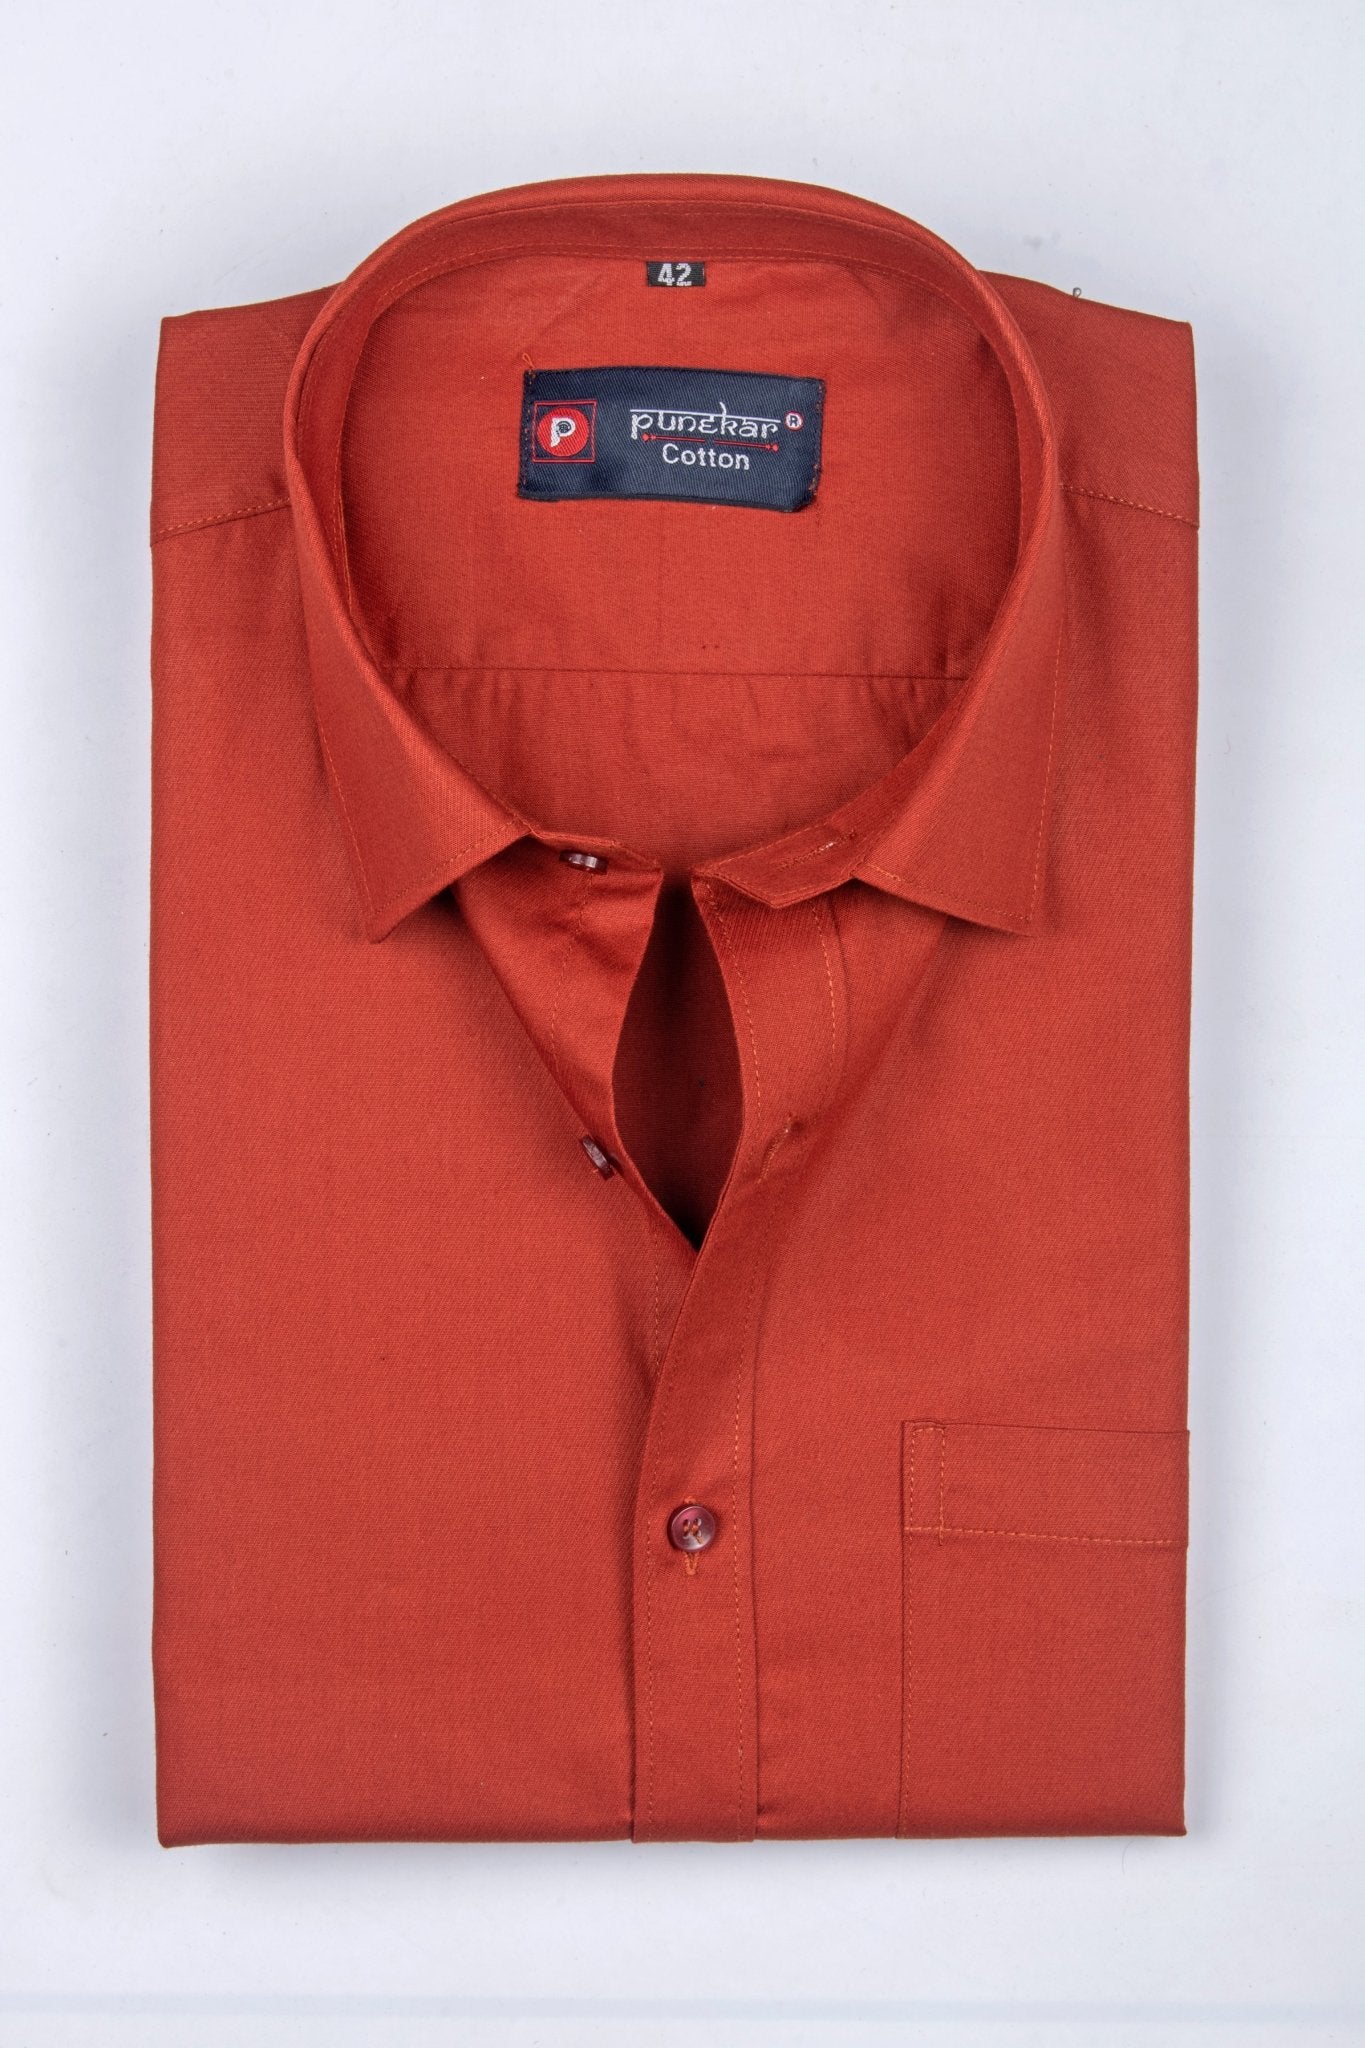 Punekar Cotton Copper Color 100% Mercerised Cotton Diagonally Woven Formal Shirt for Men's. - Punekar Cotton